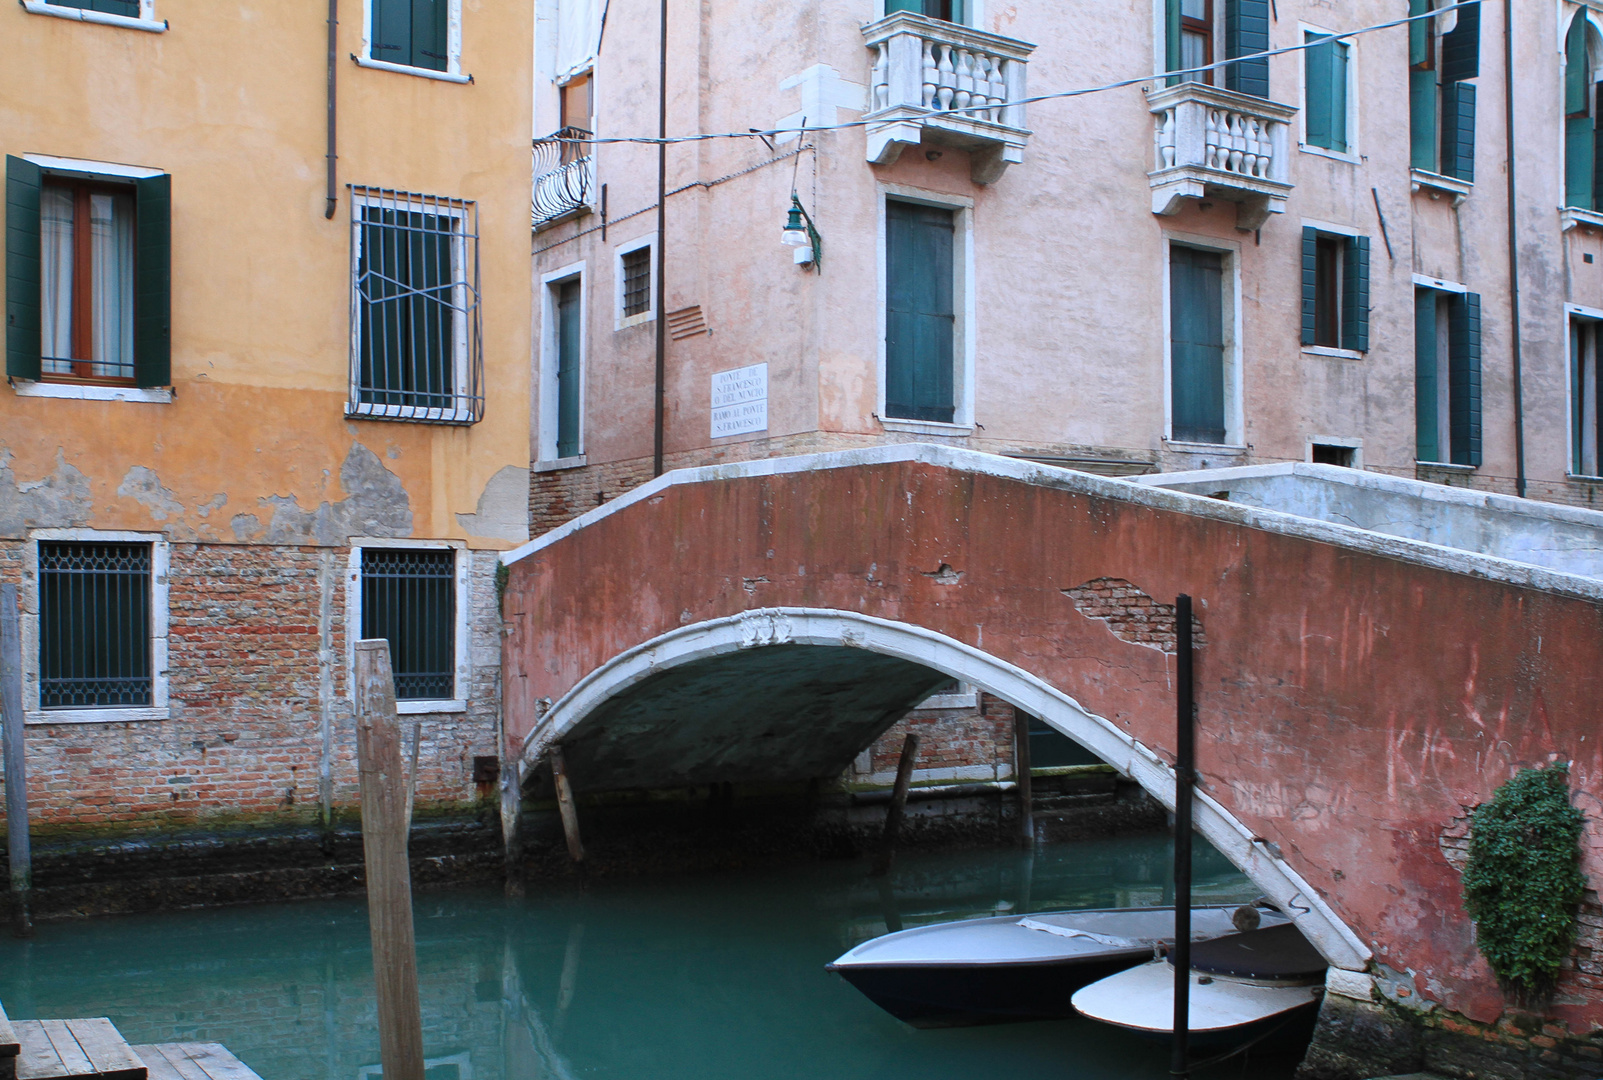 2 Boats...Venice